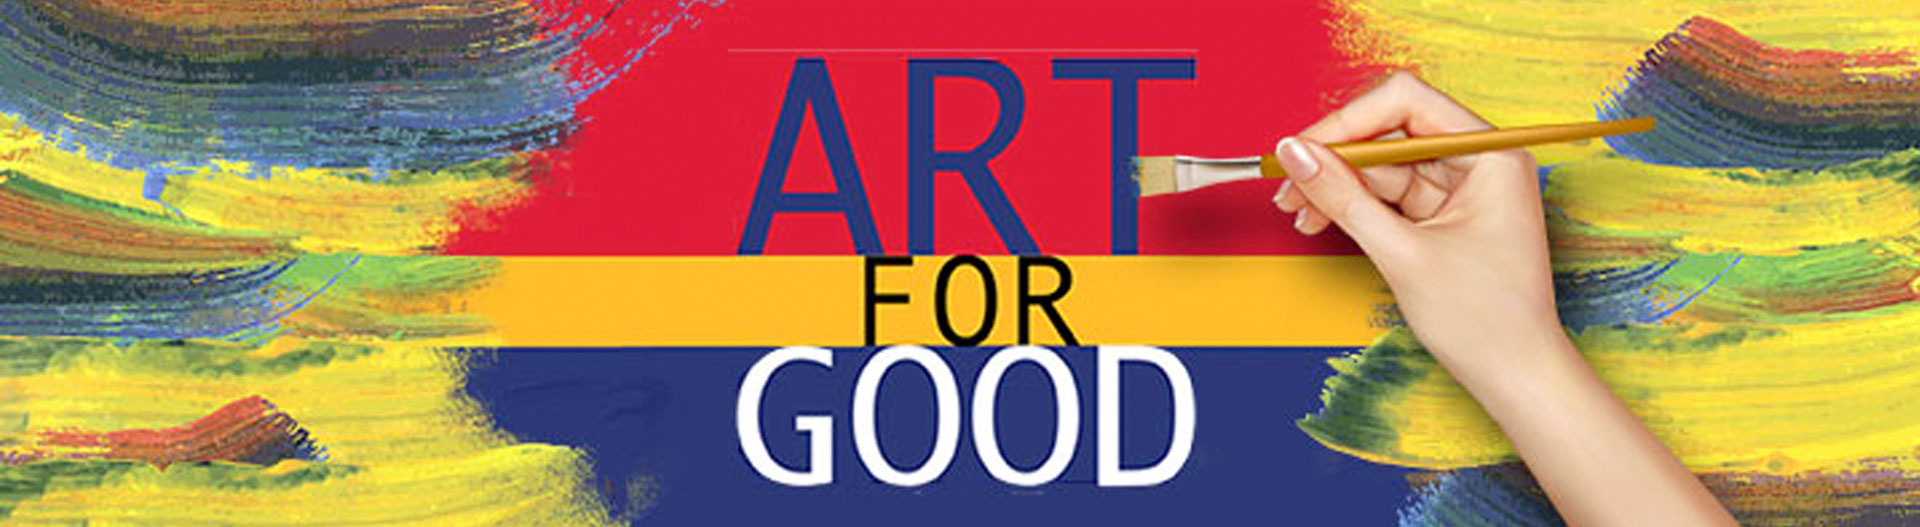 Art For Good Affiliate - Slider Image